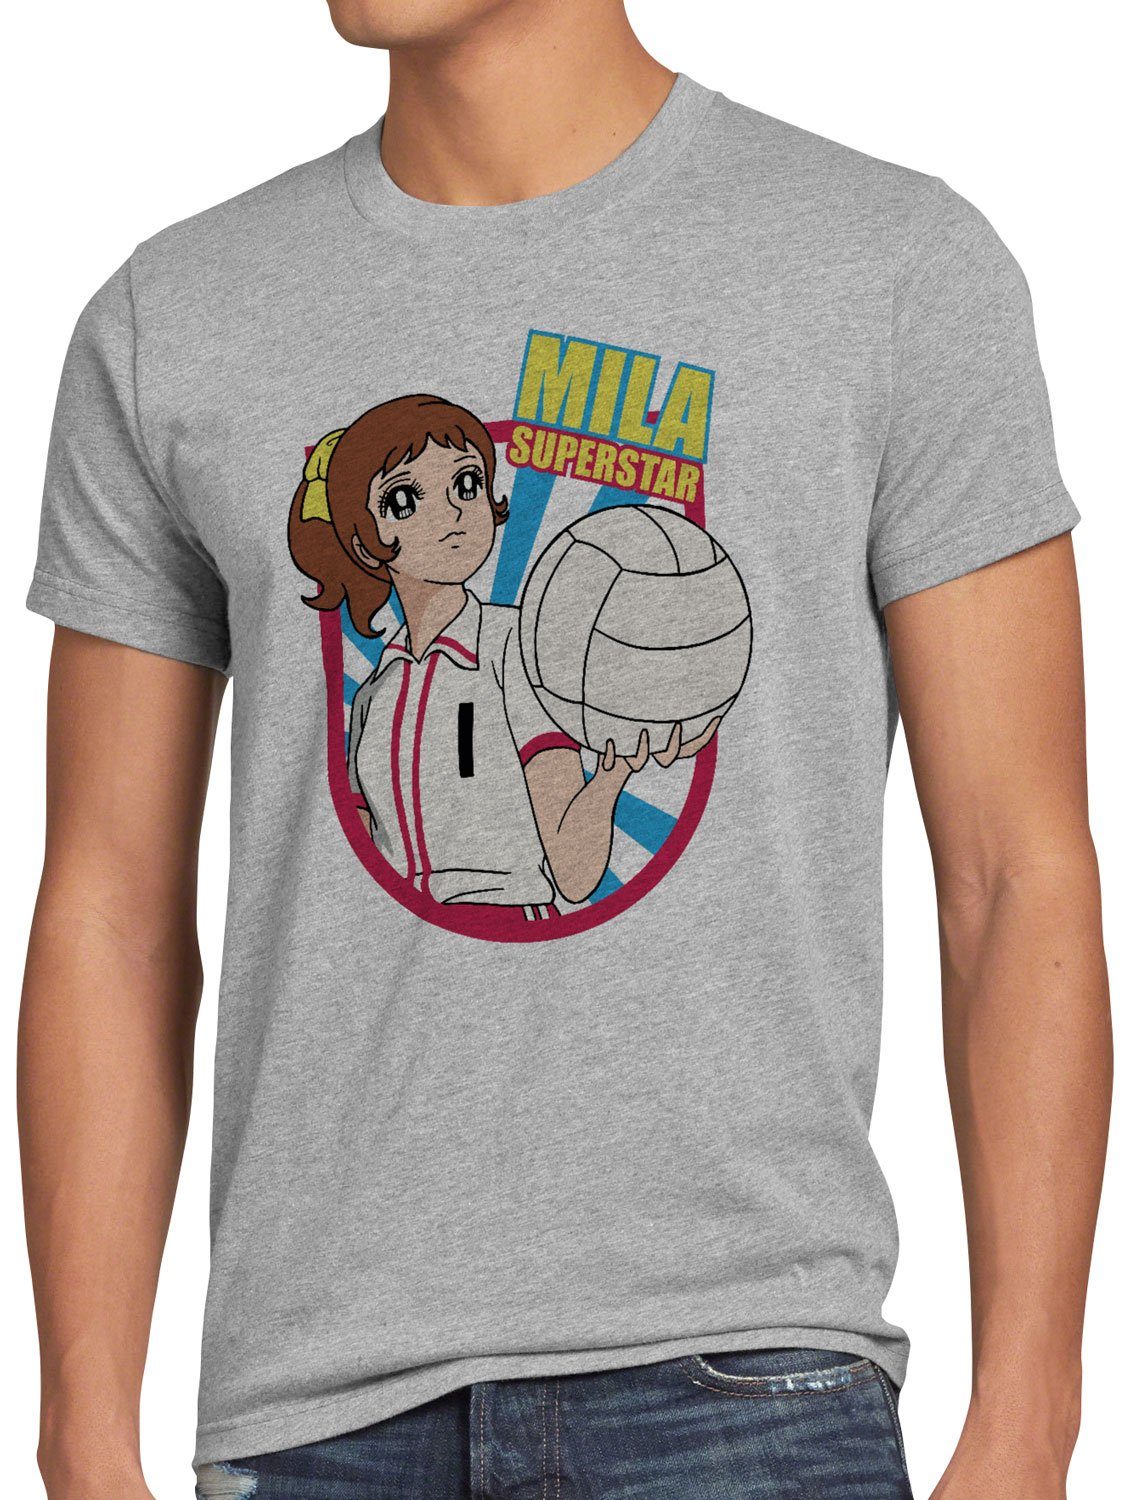 Superstar Herren grau T-Shirt volleyball japan style3 team Print-Shirt meliert Mila